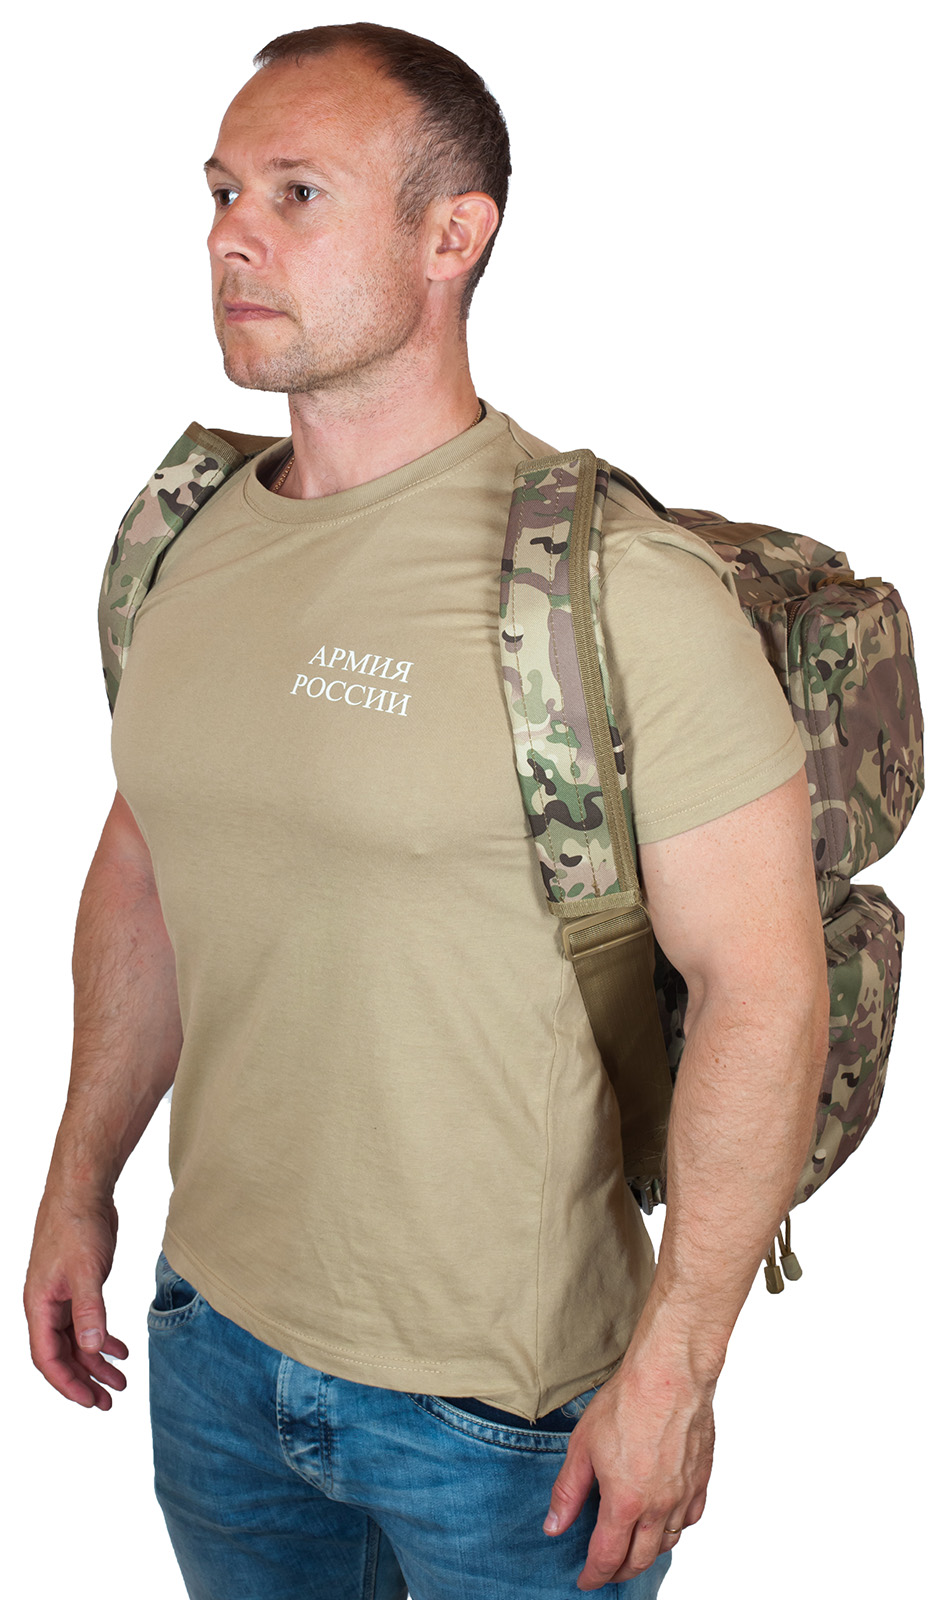 Купить армейскую камуфляжную сумку-рюкзак Росгвардия оптом или в розницу